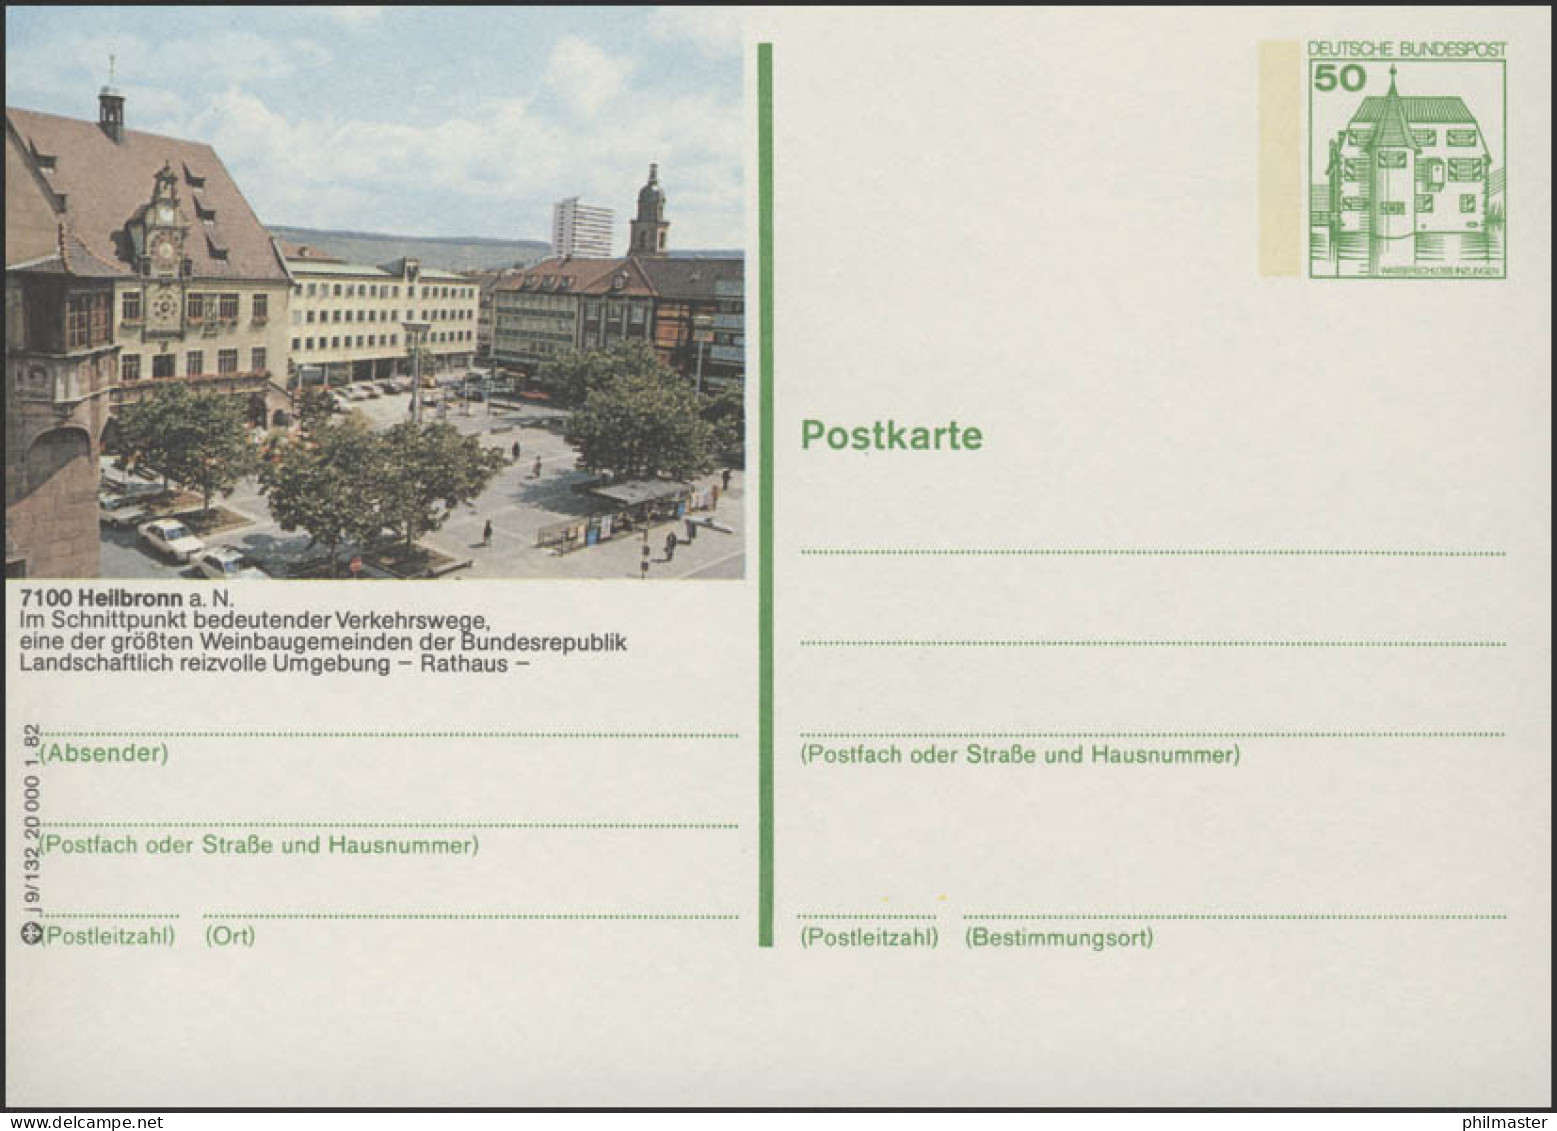 P134-j9/132 - 7100 Heilbronn, Rathaus ** - Bildpostkarten - Ungebraucht